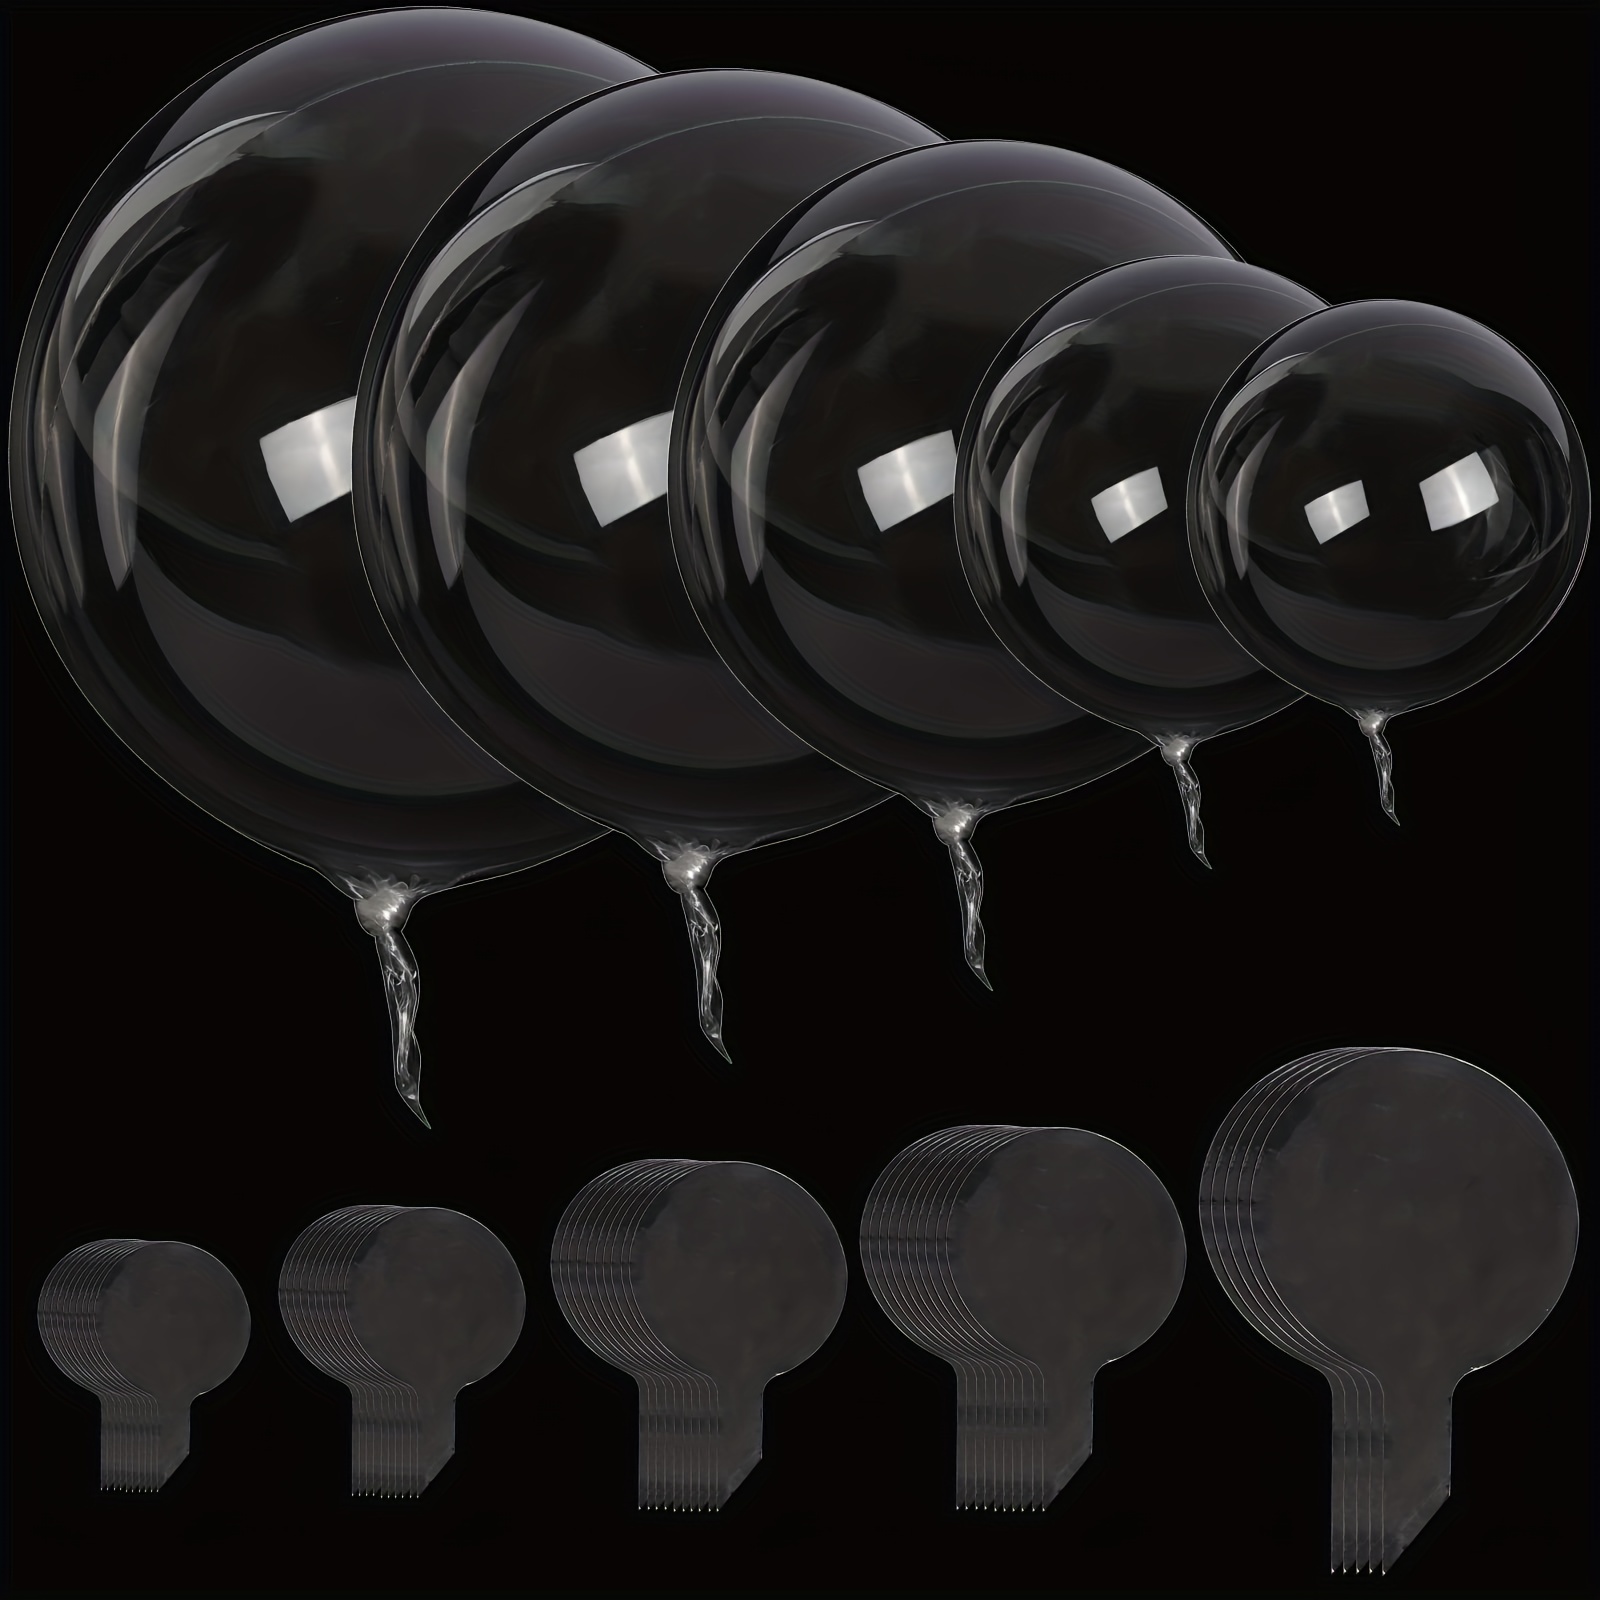  25 globos transparentes Bobo de 12 pulgadas para